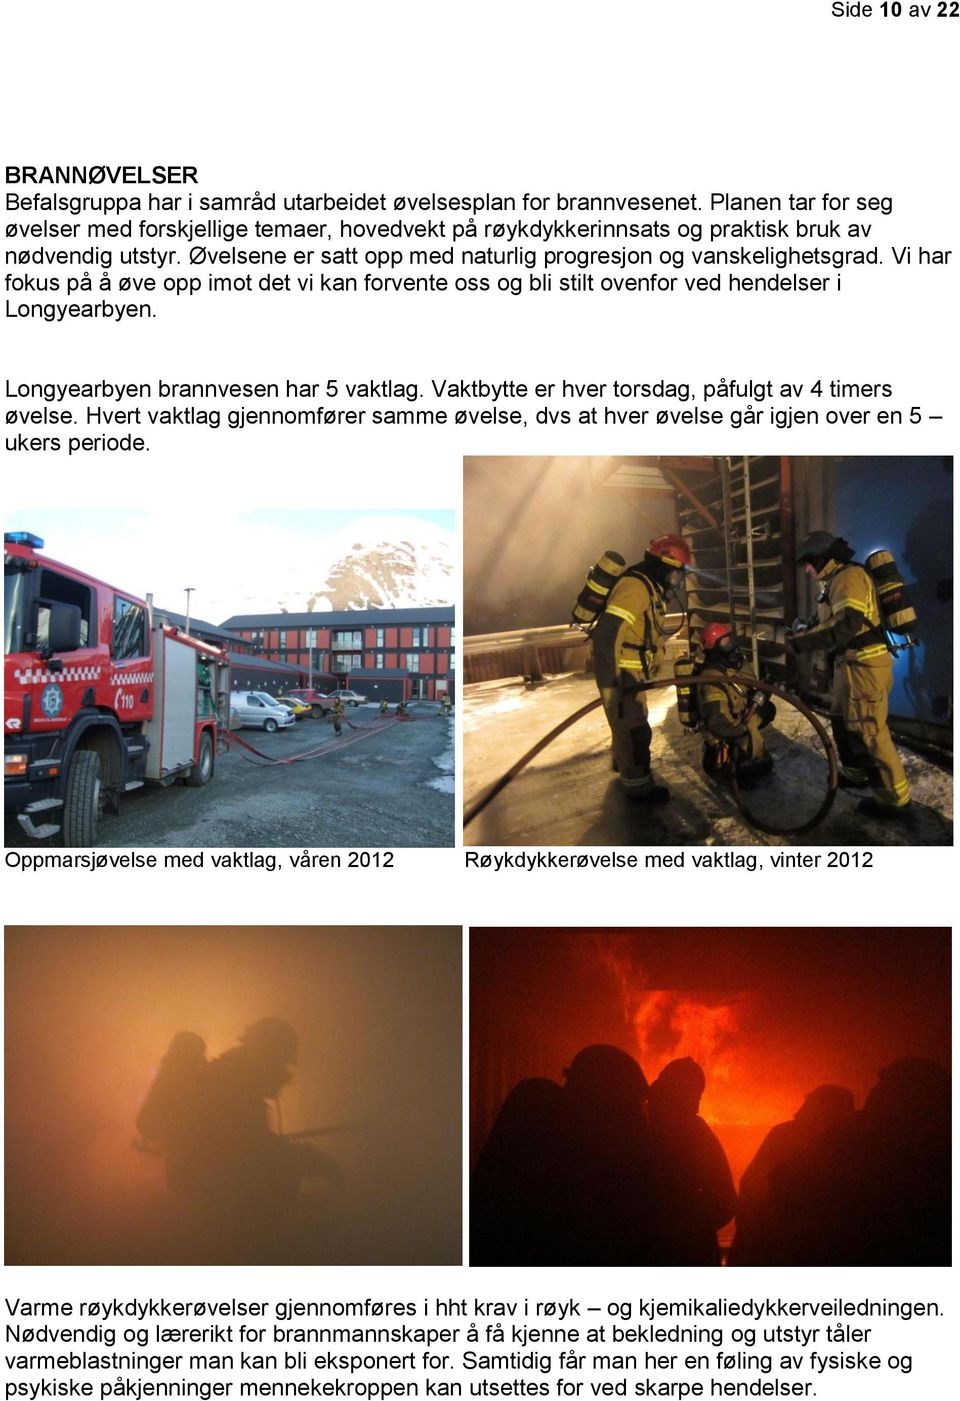 Vi har fokus på å øve opp imot det vi kan forvente oss og bli stilt ovenfor ved hendelser i Longyearbyen. Longyearbyen brannvesen har 5 vaktlag. Vaktbytte er hver torsdag, påfulgt av 4 timers øvelse.